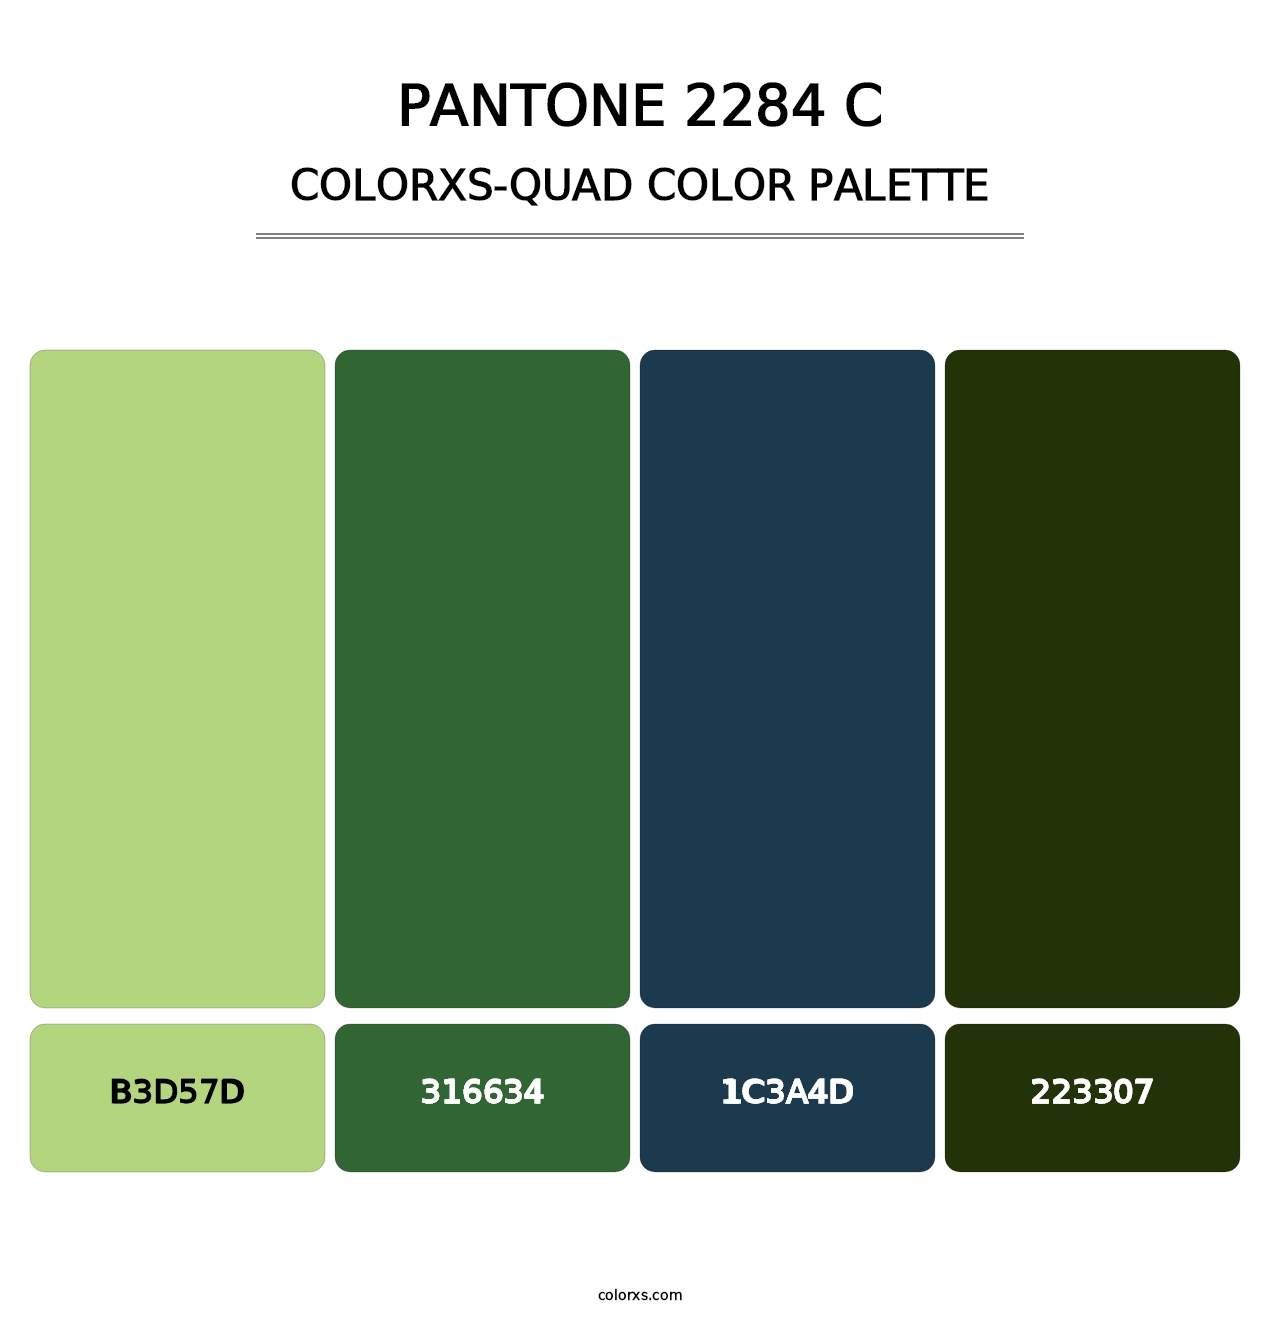 PANTONE 2284 C - Colorxs Quad Palette